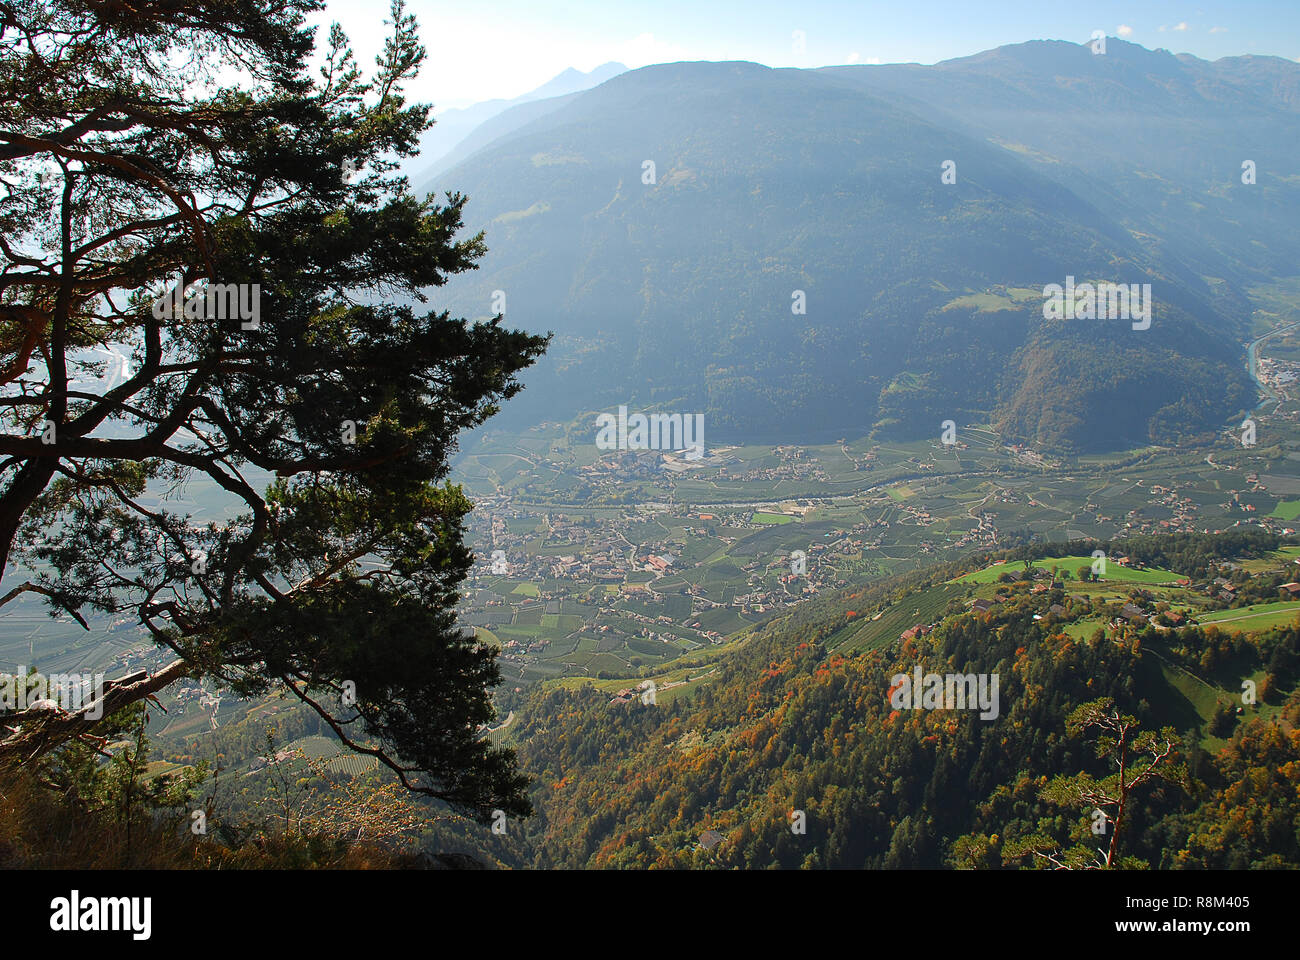 Vue panoramique sur les vallées et les montagnes des Alpes italiennes debout à l'Hans-Frieden-Felsenweg (Meran, le Tyrol du Sud, Italie). Banque D'Images